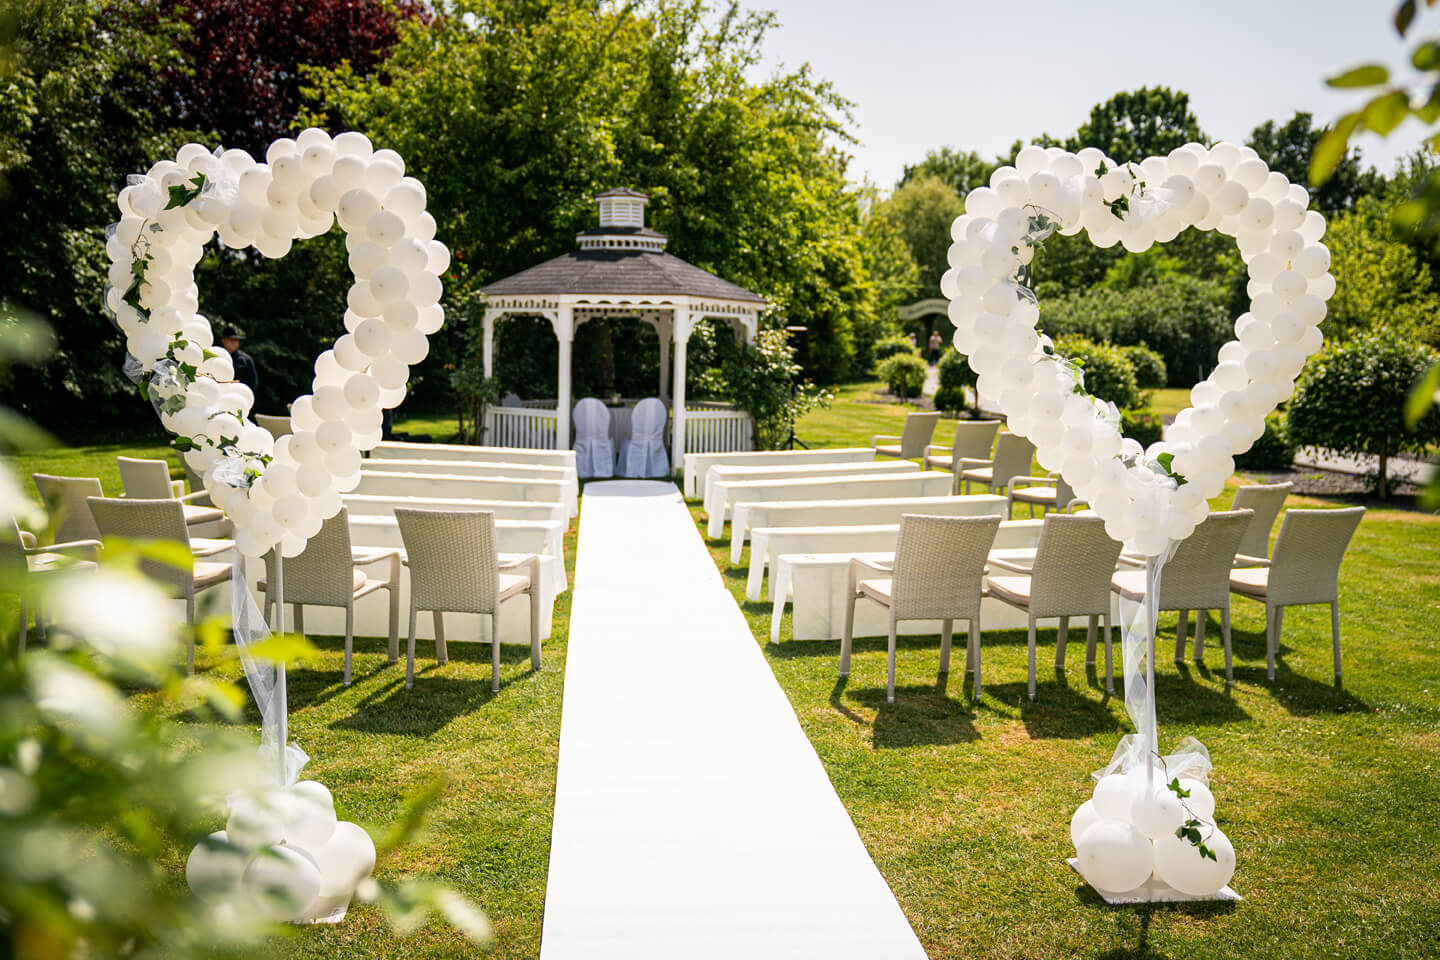 Als Hochzeitsfotograf muss man auch die Location fotografieren bevor die Gäste kommen. Hier vor einer freien Trauung auf der Wiese.